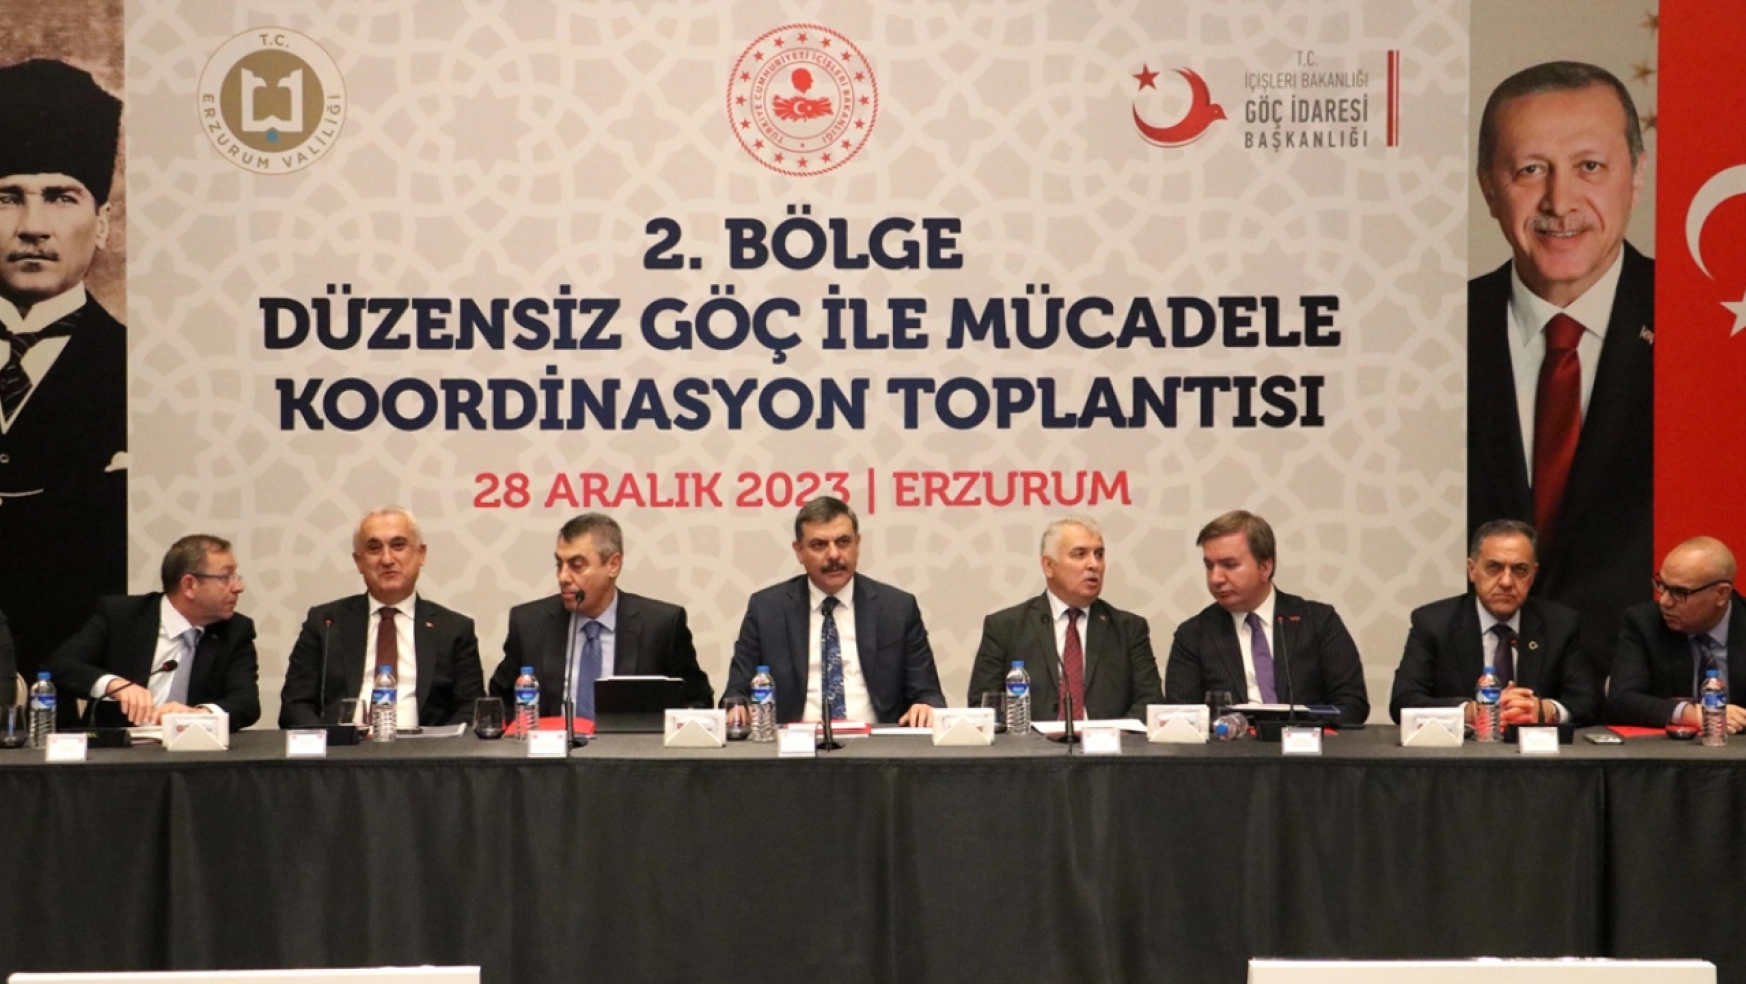 Erzurum'da 2. Bölge Düzensiz Göç ile Mücadele Koordinasyon Toplantısı yapıldı